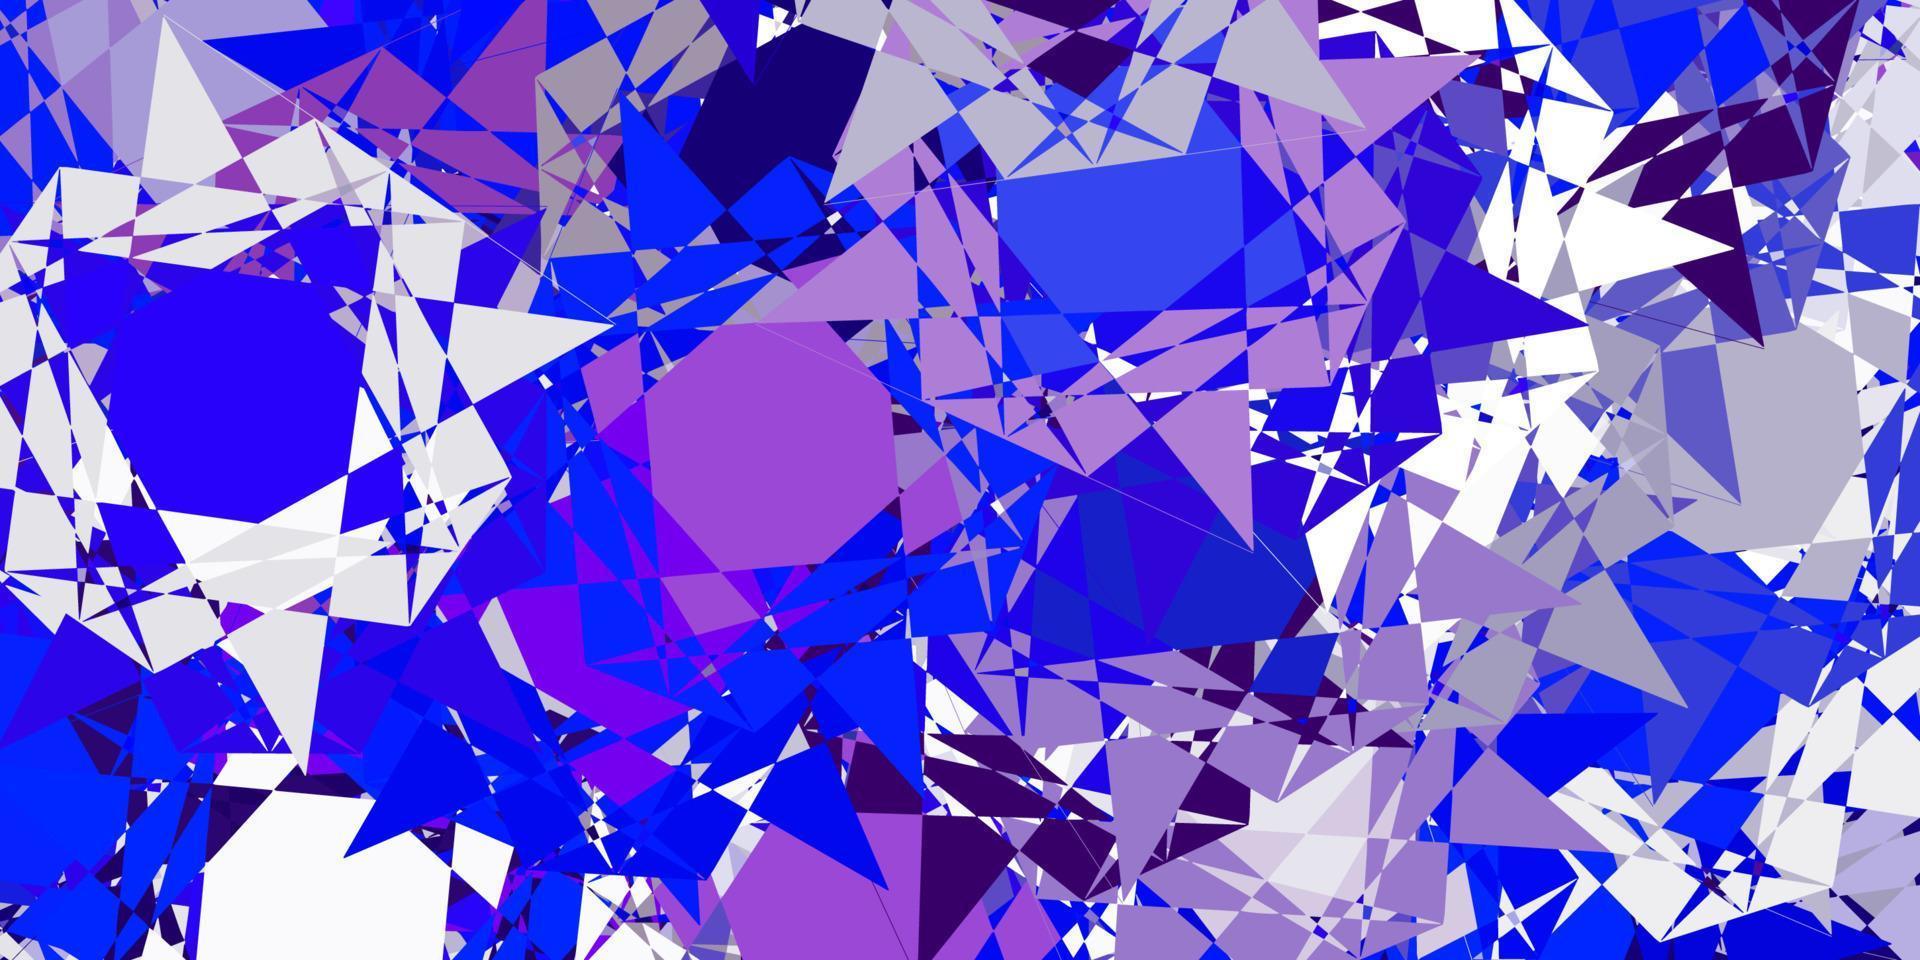 ljusrosa, blå vektormönster med månghörniga former. vektor